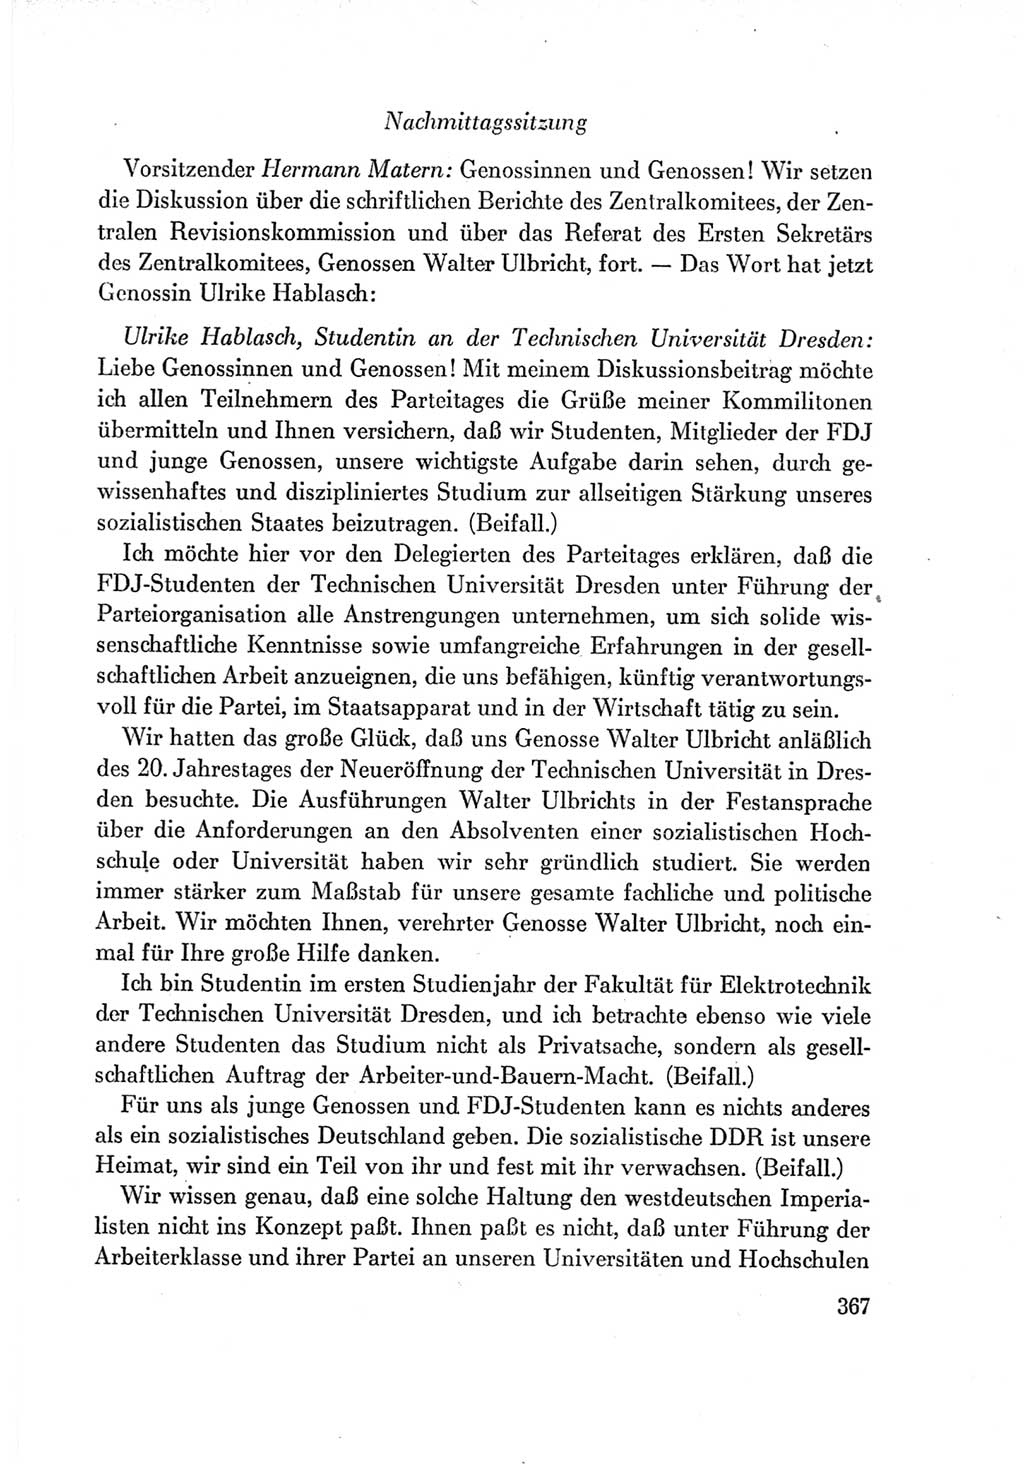 Protokoll der Verhandlungen des Ⅶ. Parteitages der Sozialistischen Einheitspartei Deutschlands (SED) [Deutsche Demokratische Republik (DDR)] 1967, Band Ⅰ, Seite 367 (Prot. Verh. Ⅶ. PT SED DDR 1967, Bd. Ⅰ, S. 367)